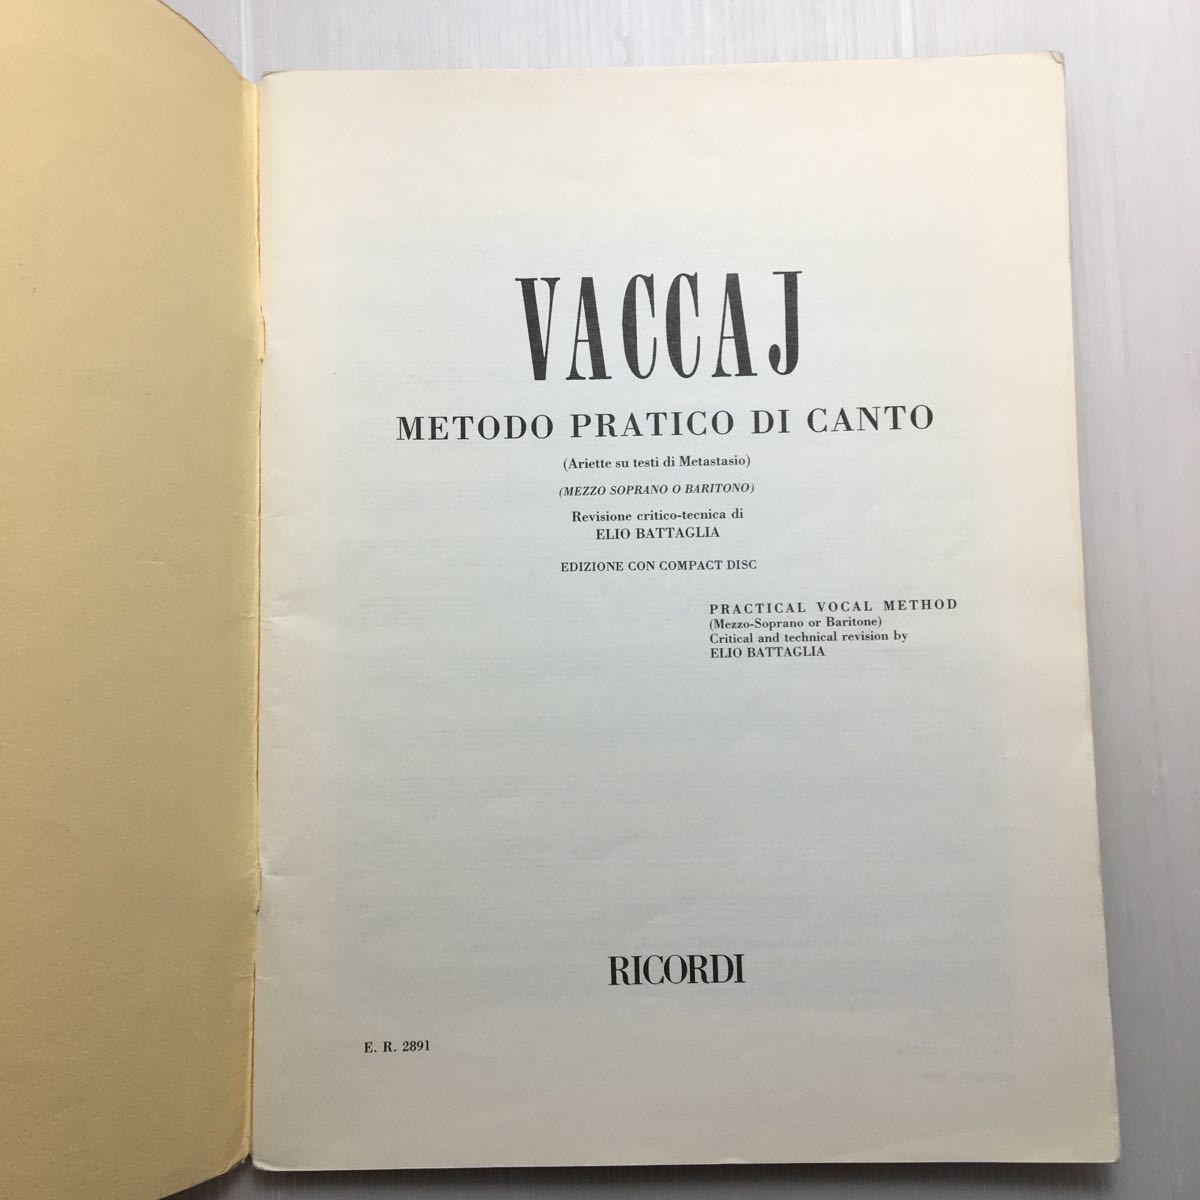 zaa-178♪『VACCAJ』METODO PRATICO DI CANTO (Elio Battaglia) 楽譜 イタリア語版_画像2